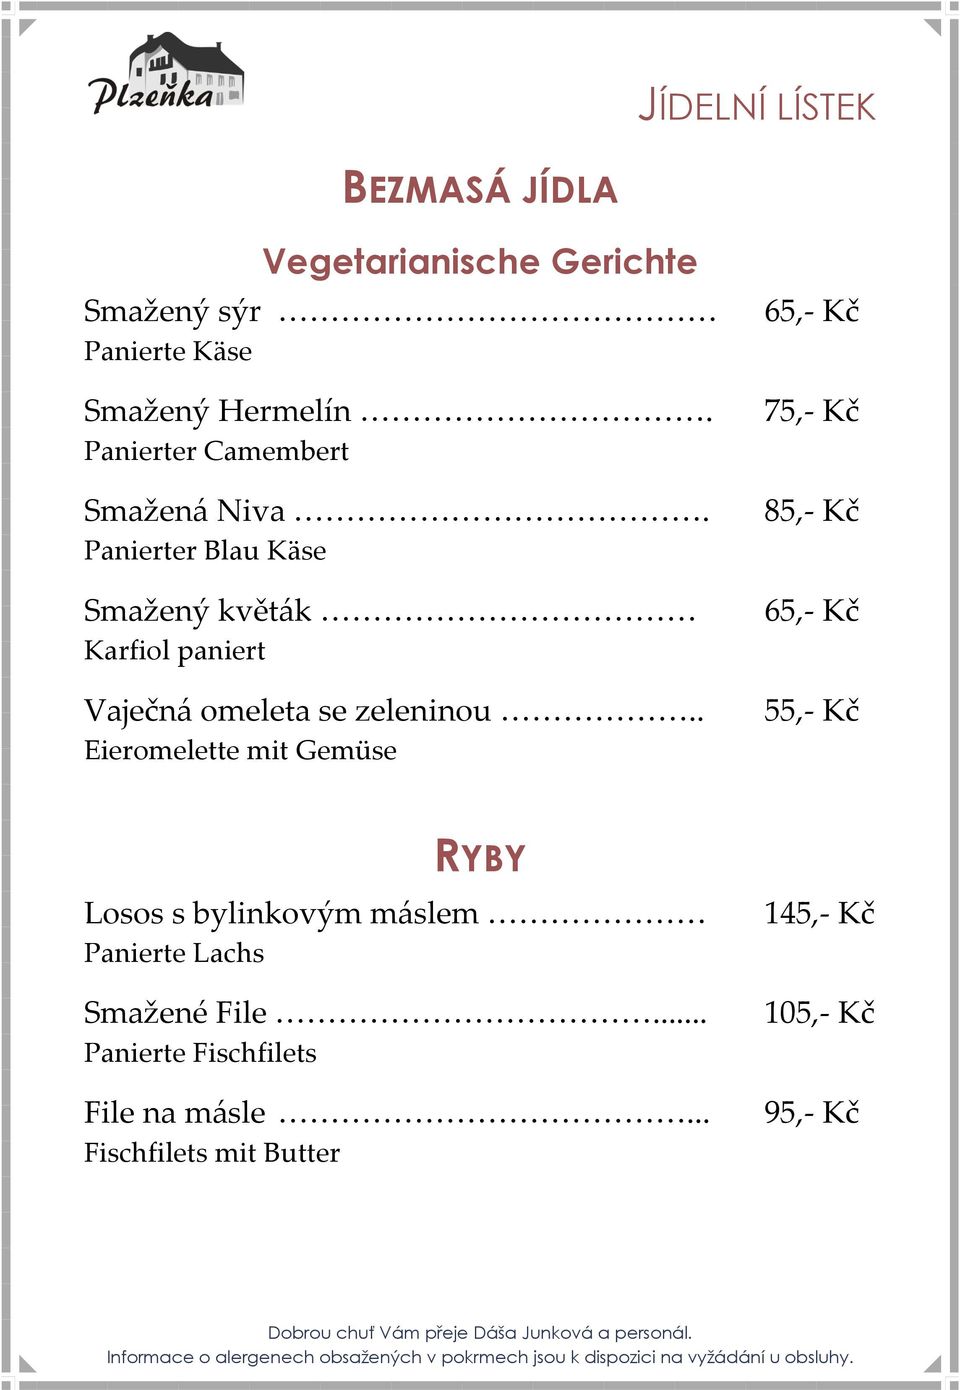 85,- Kč Panierter Blau Käse Smažený květák Karfiol paniert Vaječná omeleta se zeleninou.